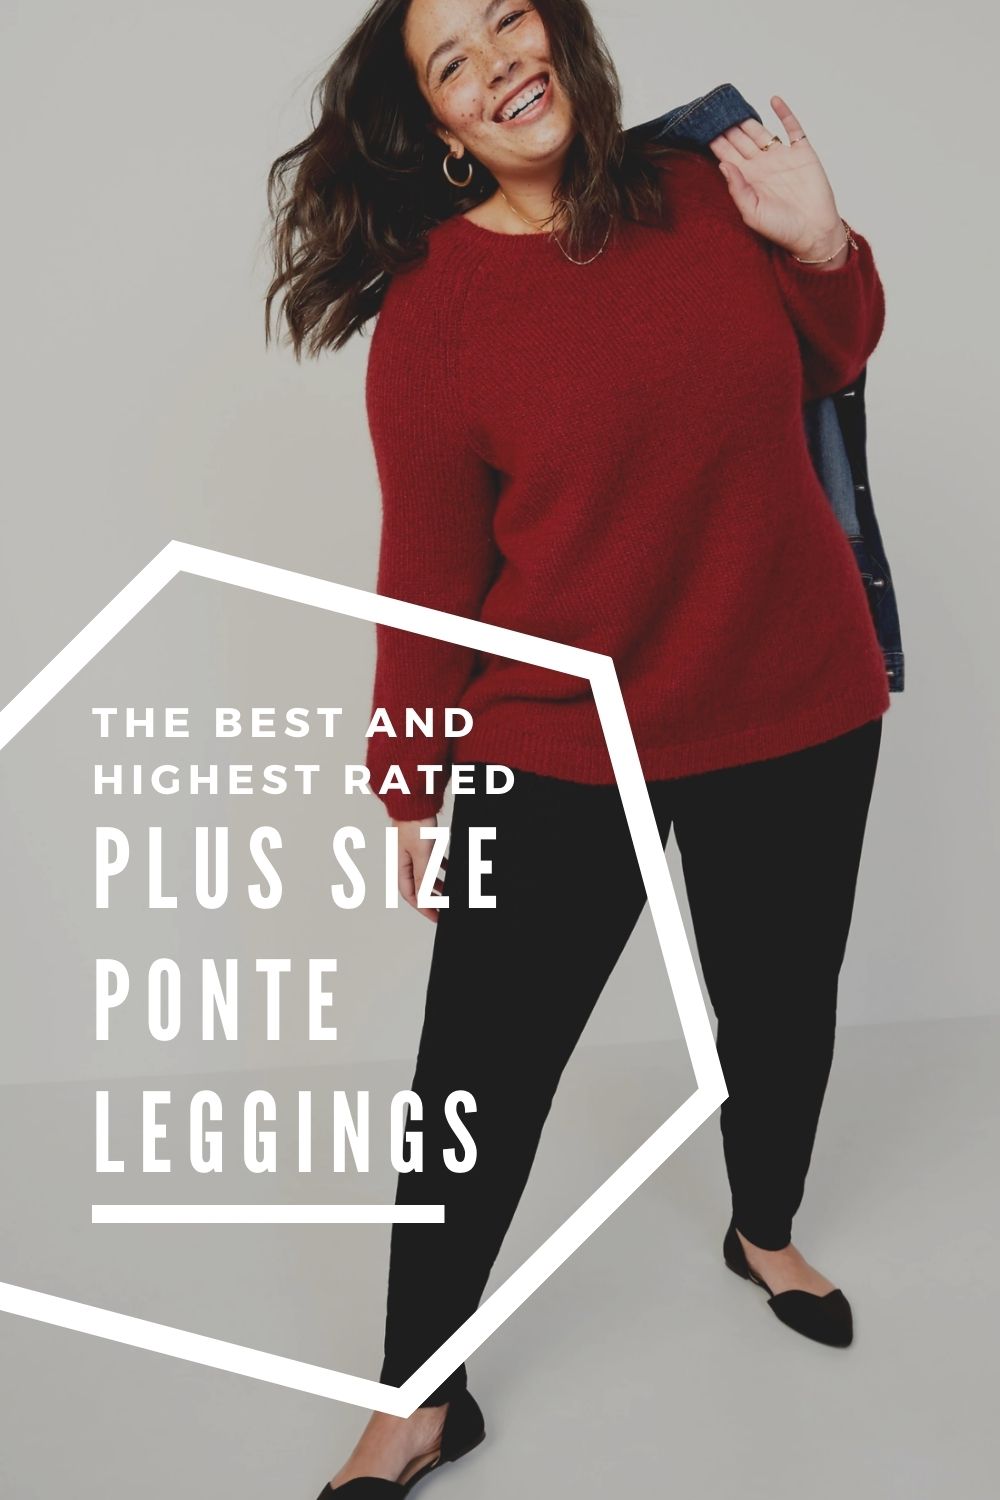 The Best Plus Size Ponte Leggings: 7 Winning Brands - Wardrobe Oxygen